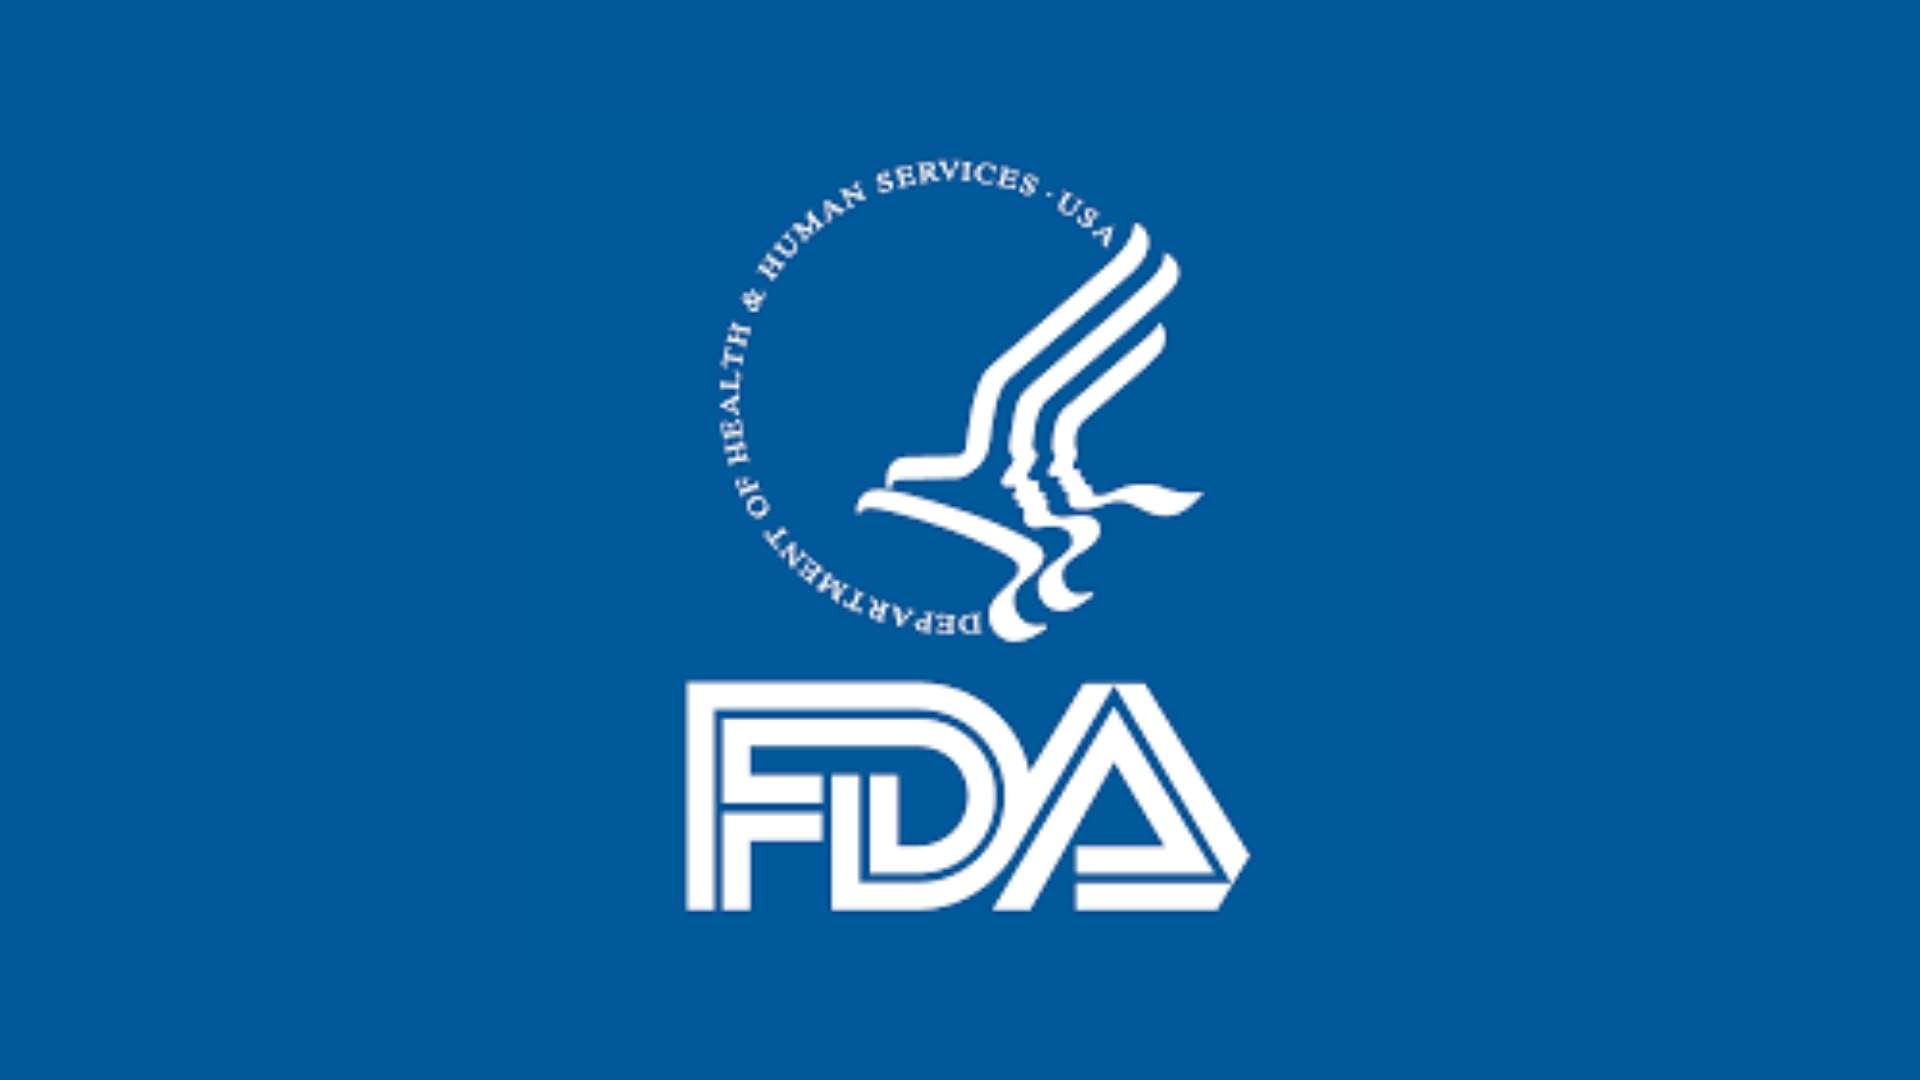 Panduan Revisi FDA tentang Tes COVID-19: Modifikasi